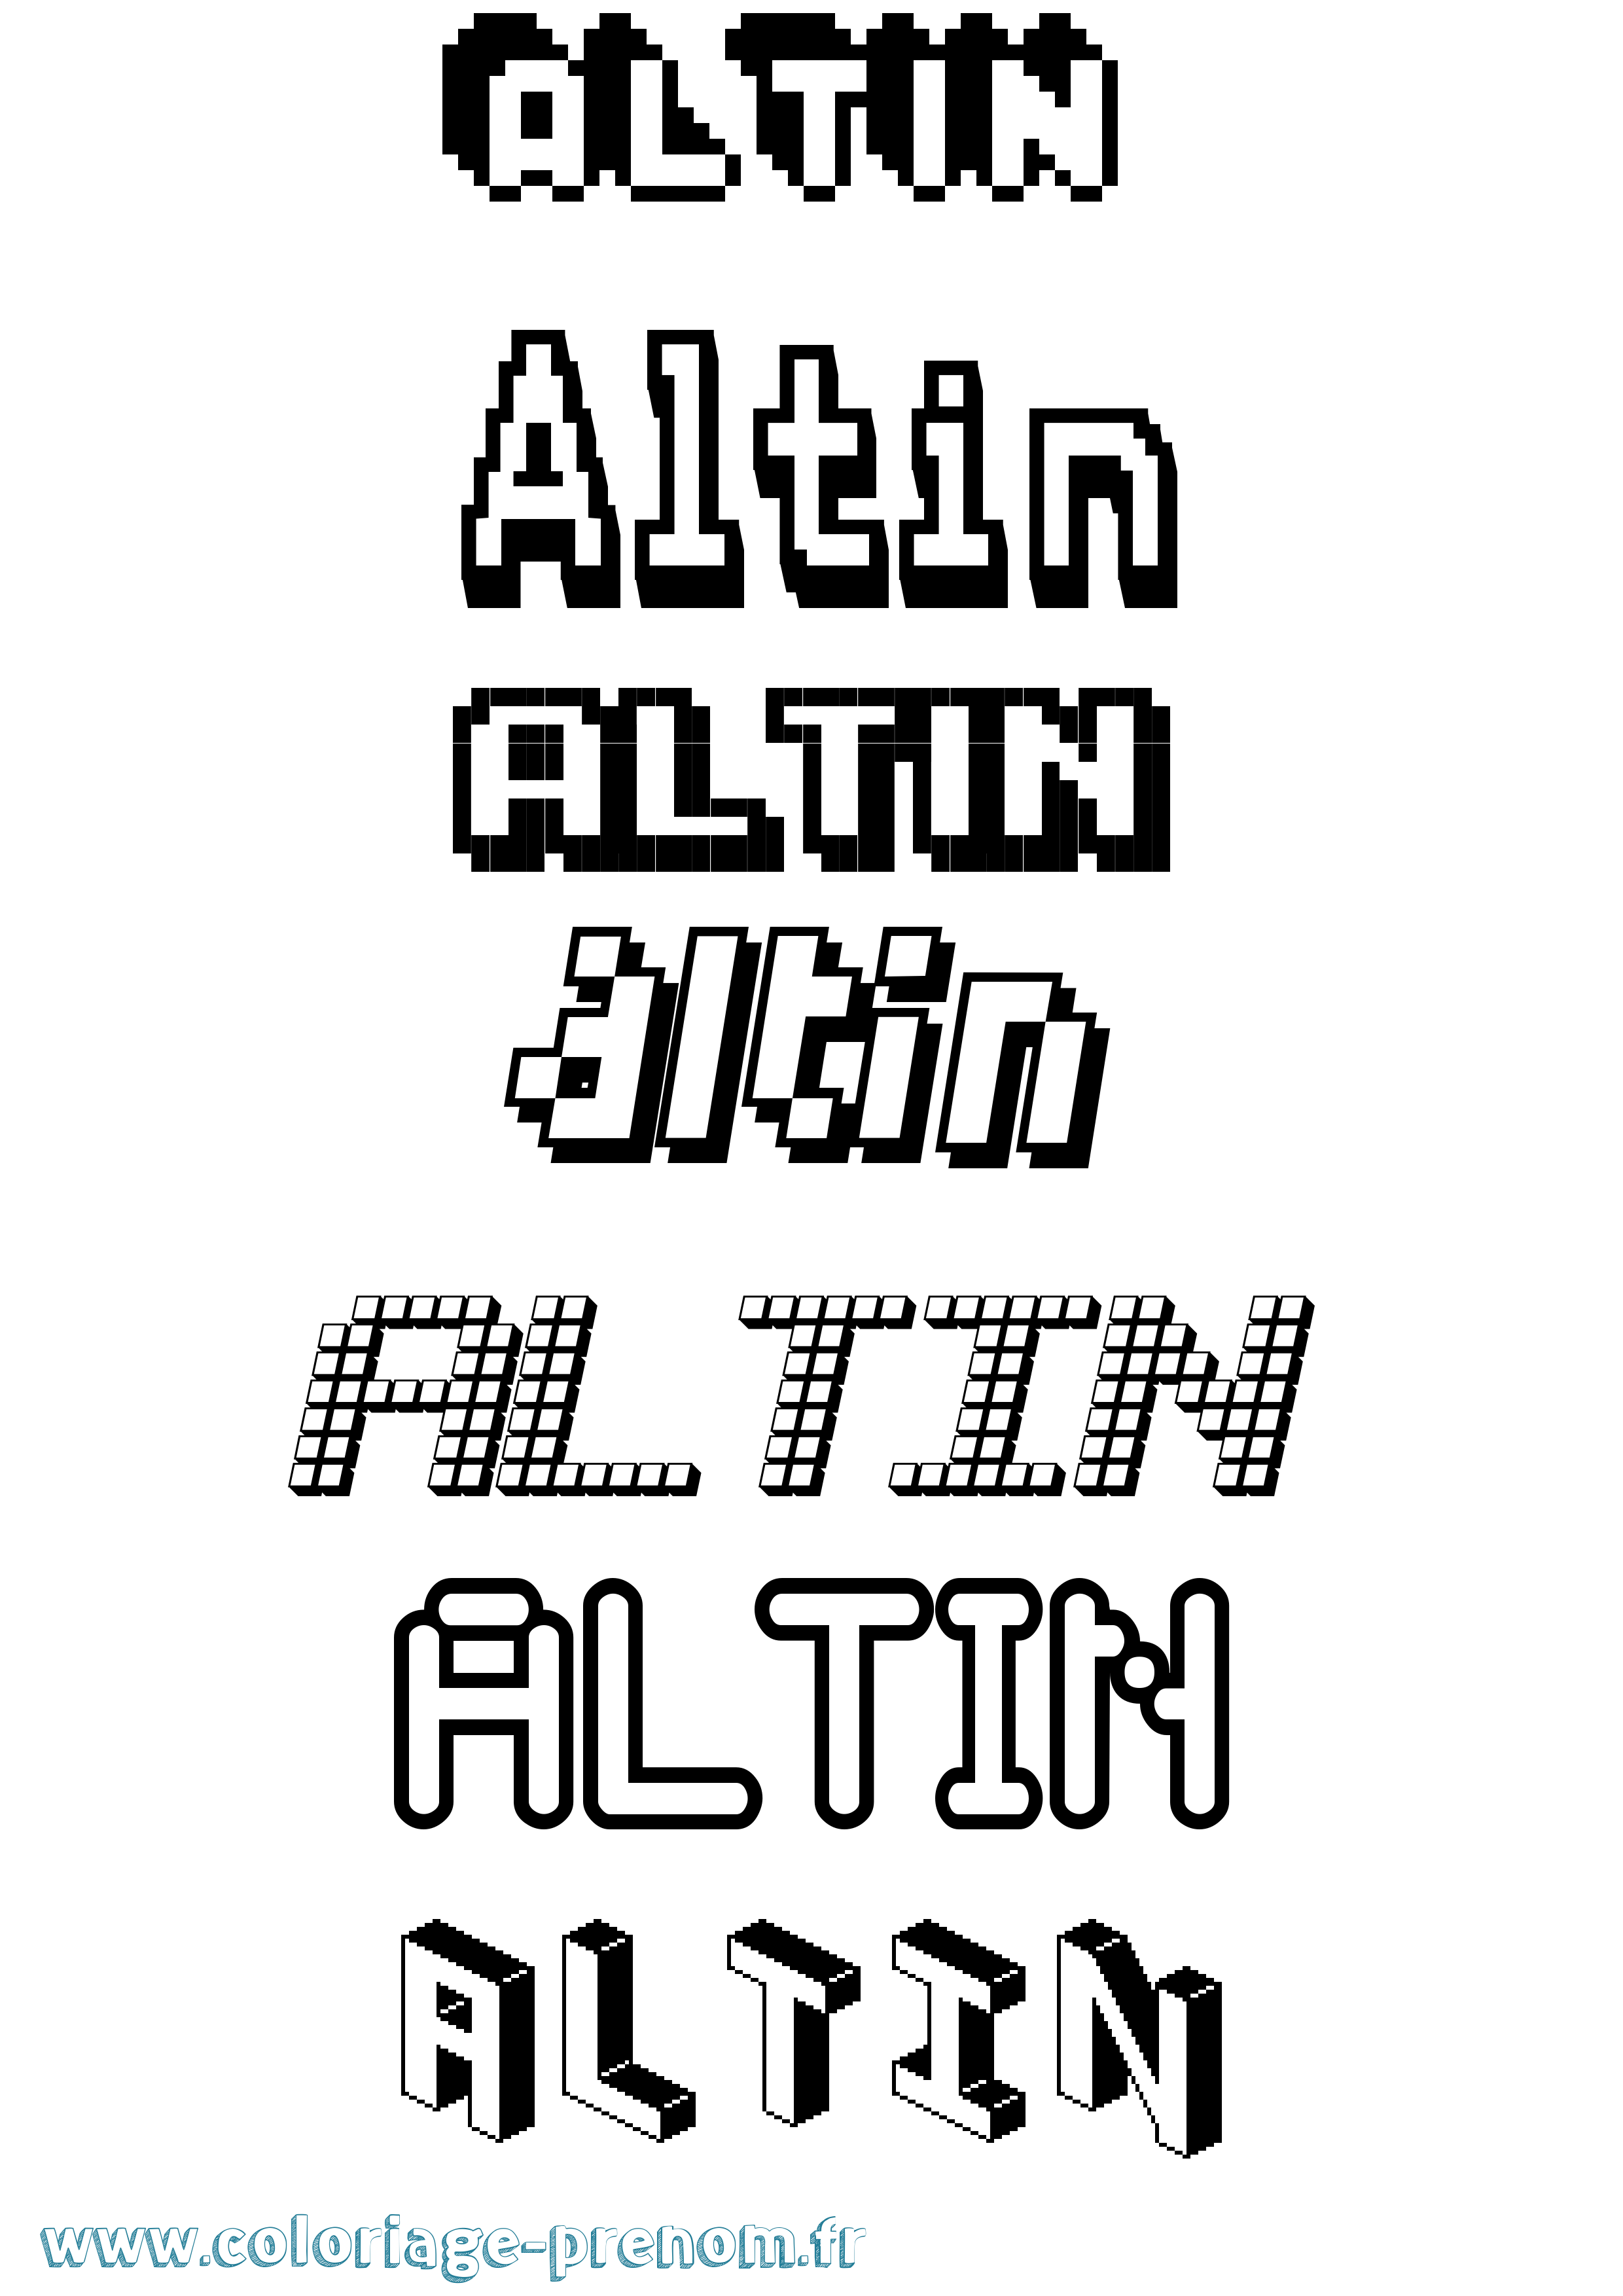 Coloriage prénom Altin Pixel